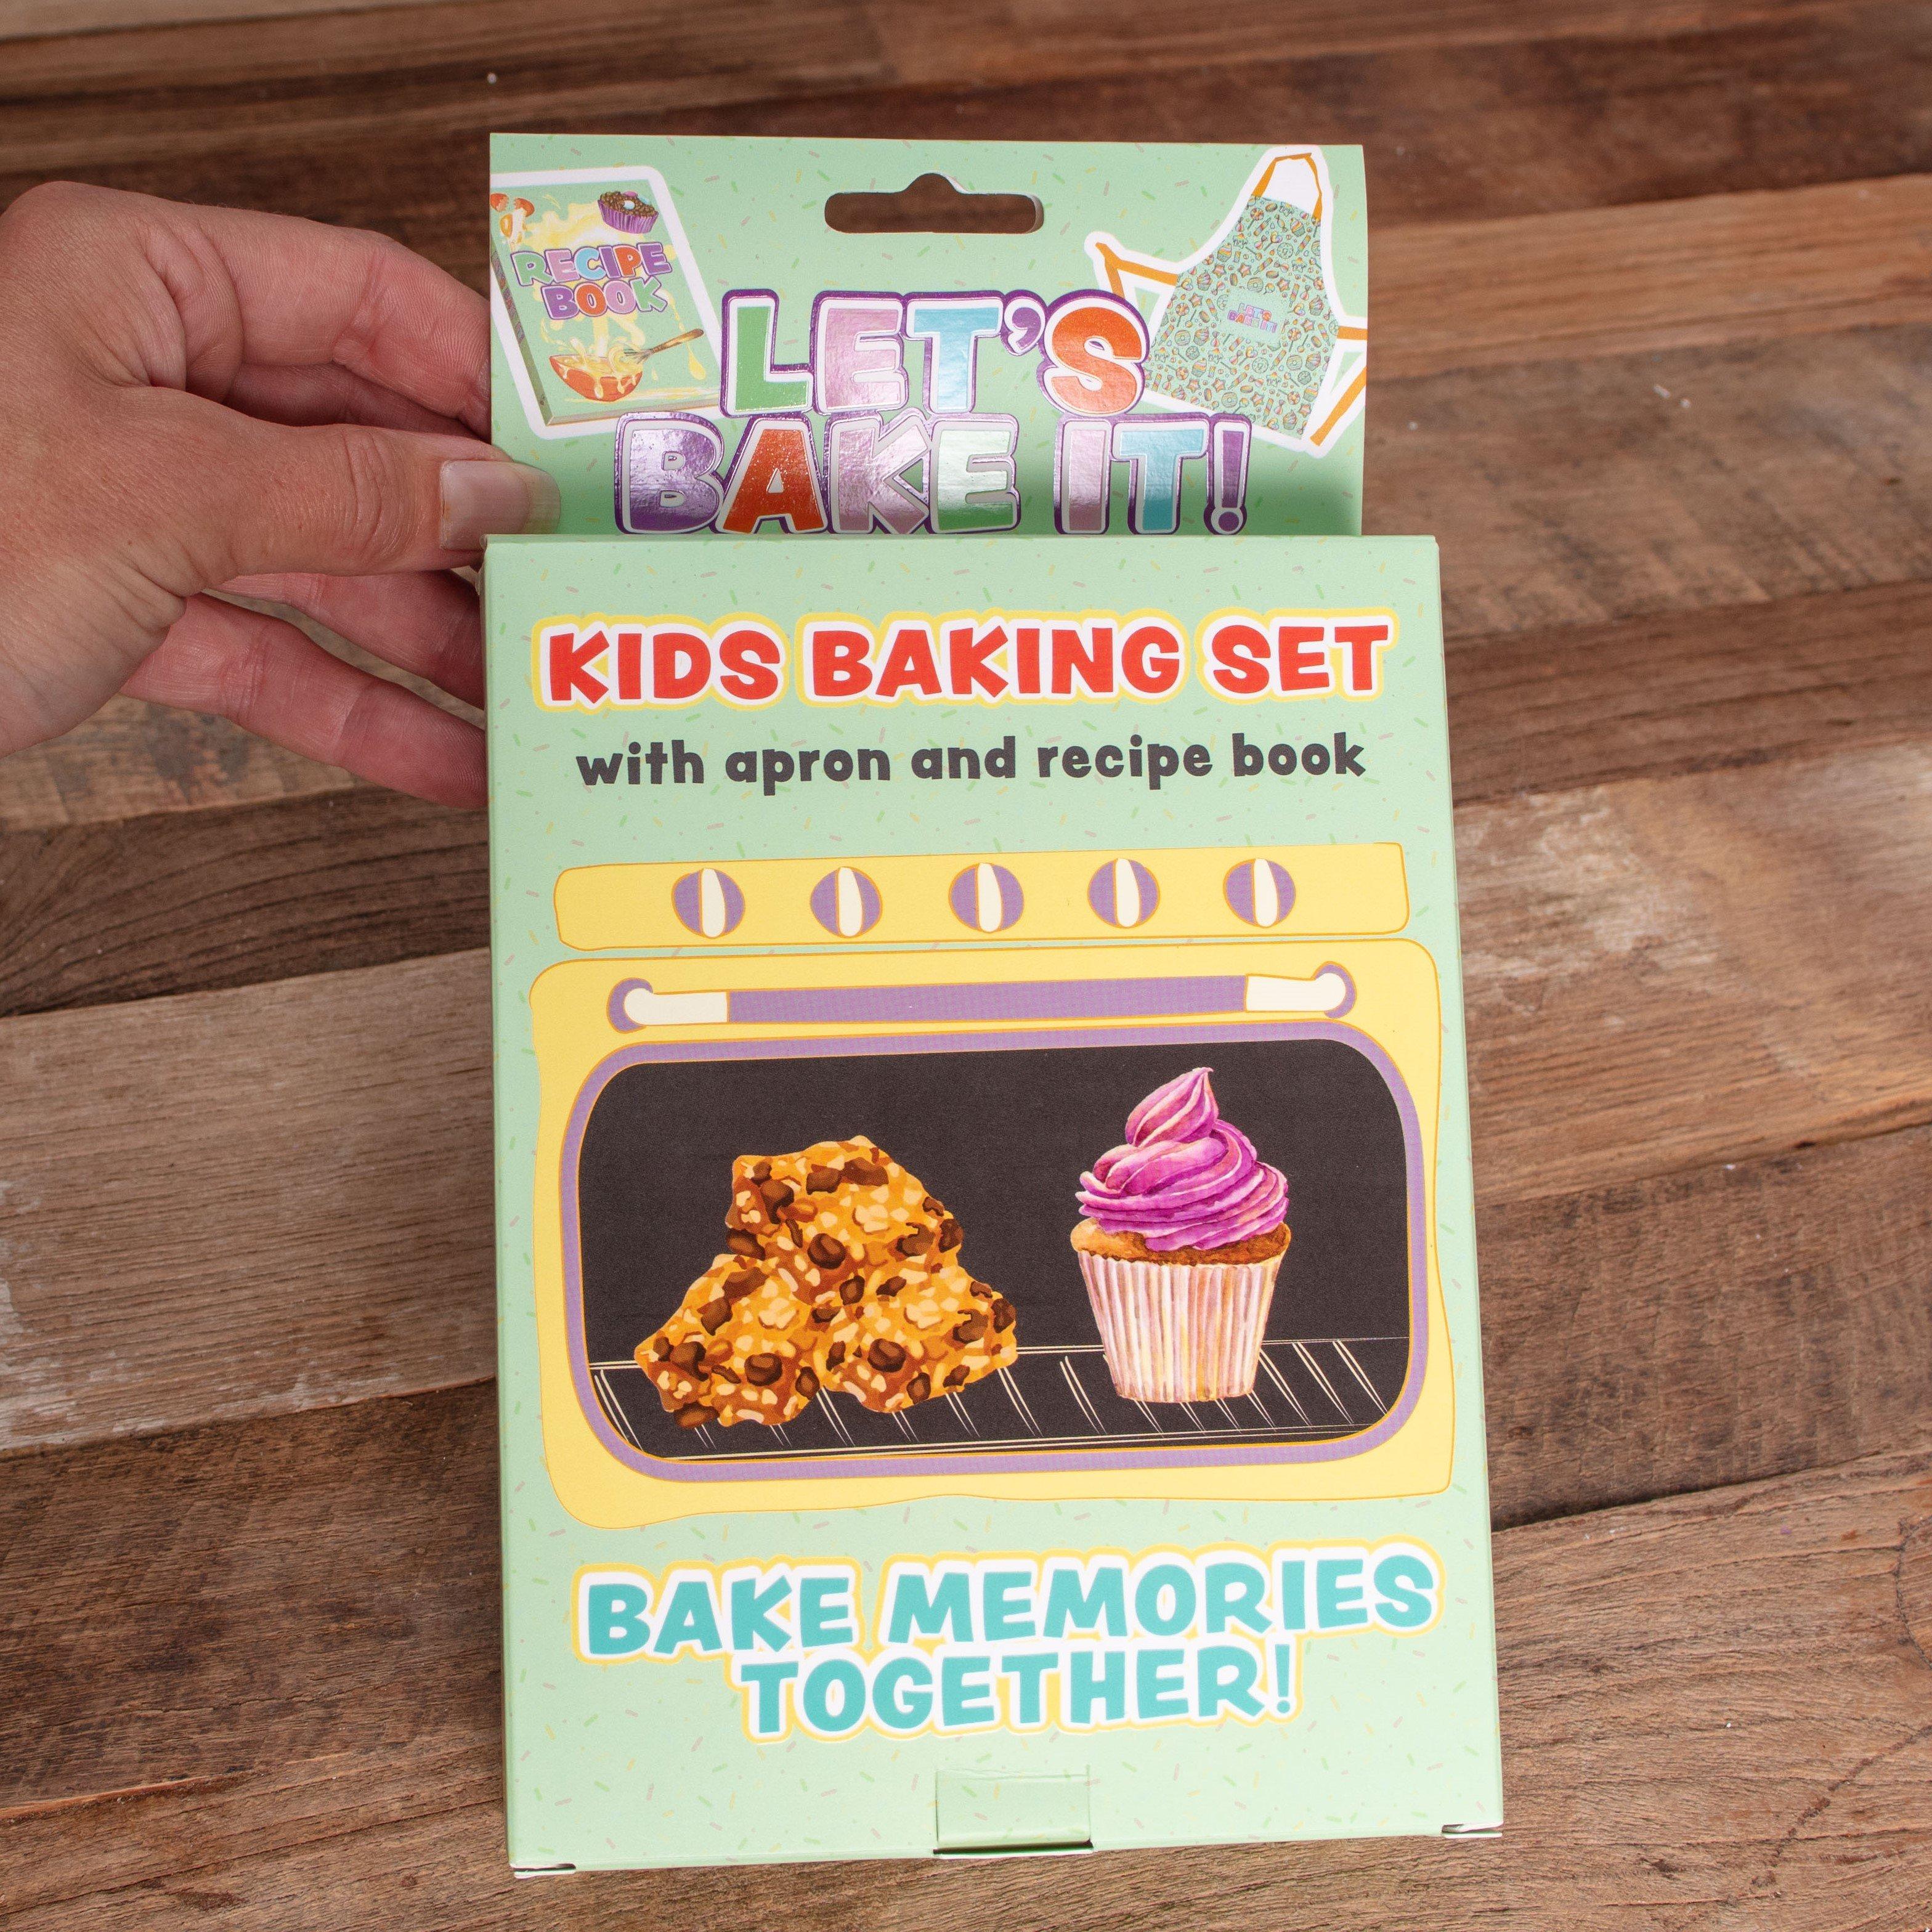 Let’s Bake It! Kids Baking Set